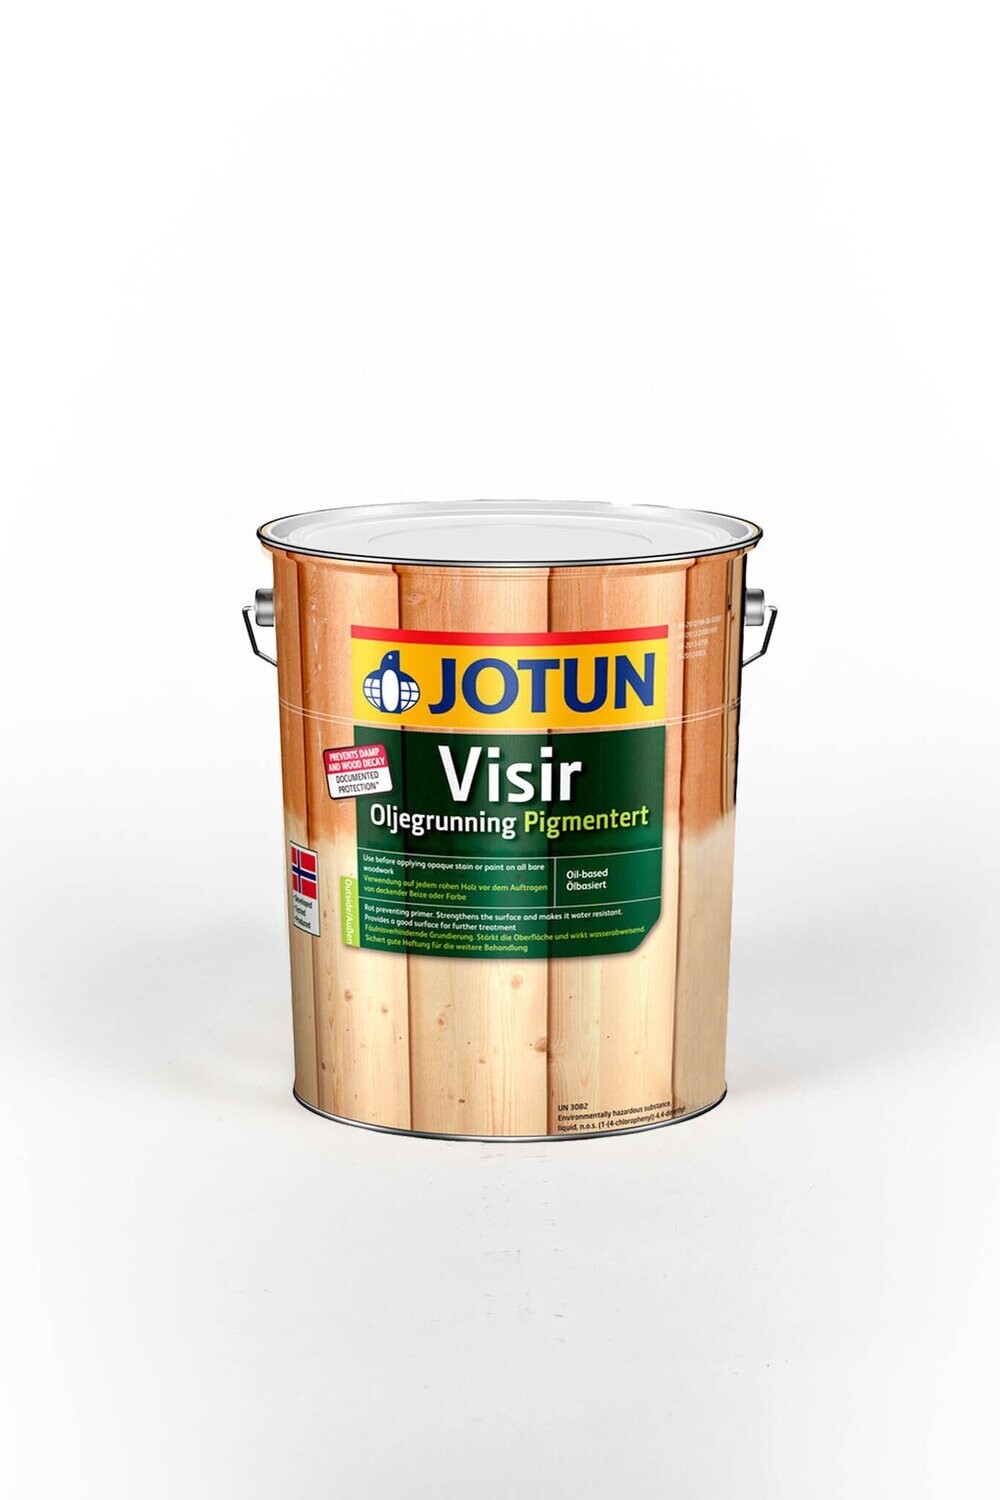 JOTUN VISIR Oljegrunning pigmentert - 10 Liter Holzschutzgrundierung